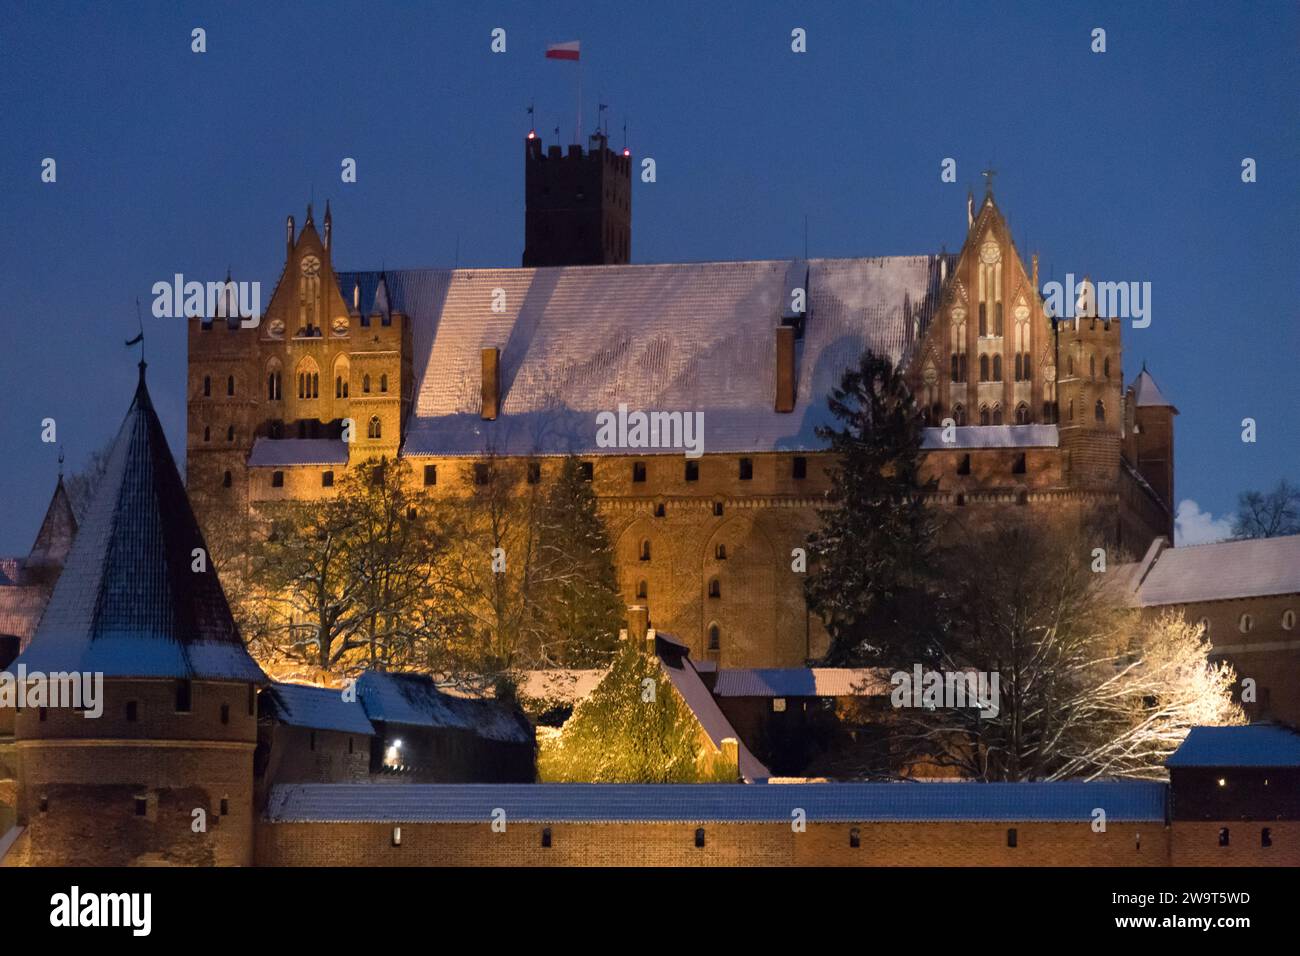 Castello alto dell'ordine Teutonico costruito tra il XIII e il XV secolo, patrimonio dell'umanità dell'UNESCO a Malbork, Polonia © Wojciech Strozyk / Alamy Stock Foto Stock